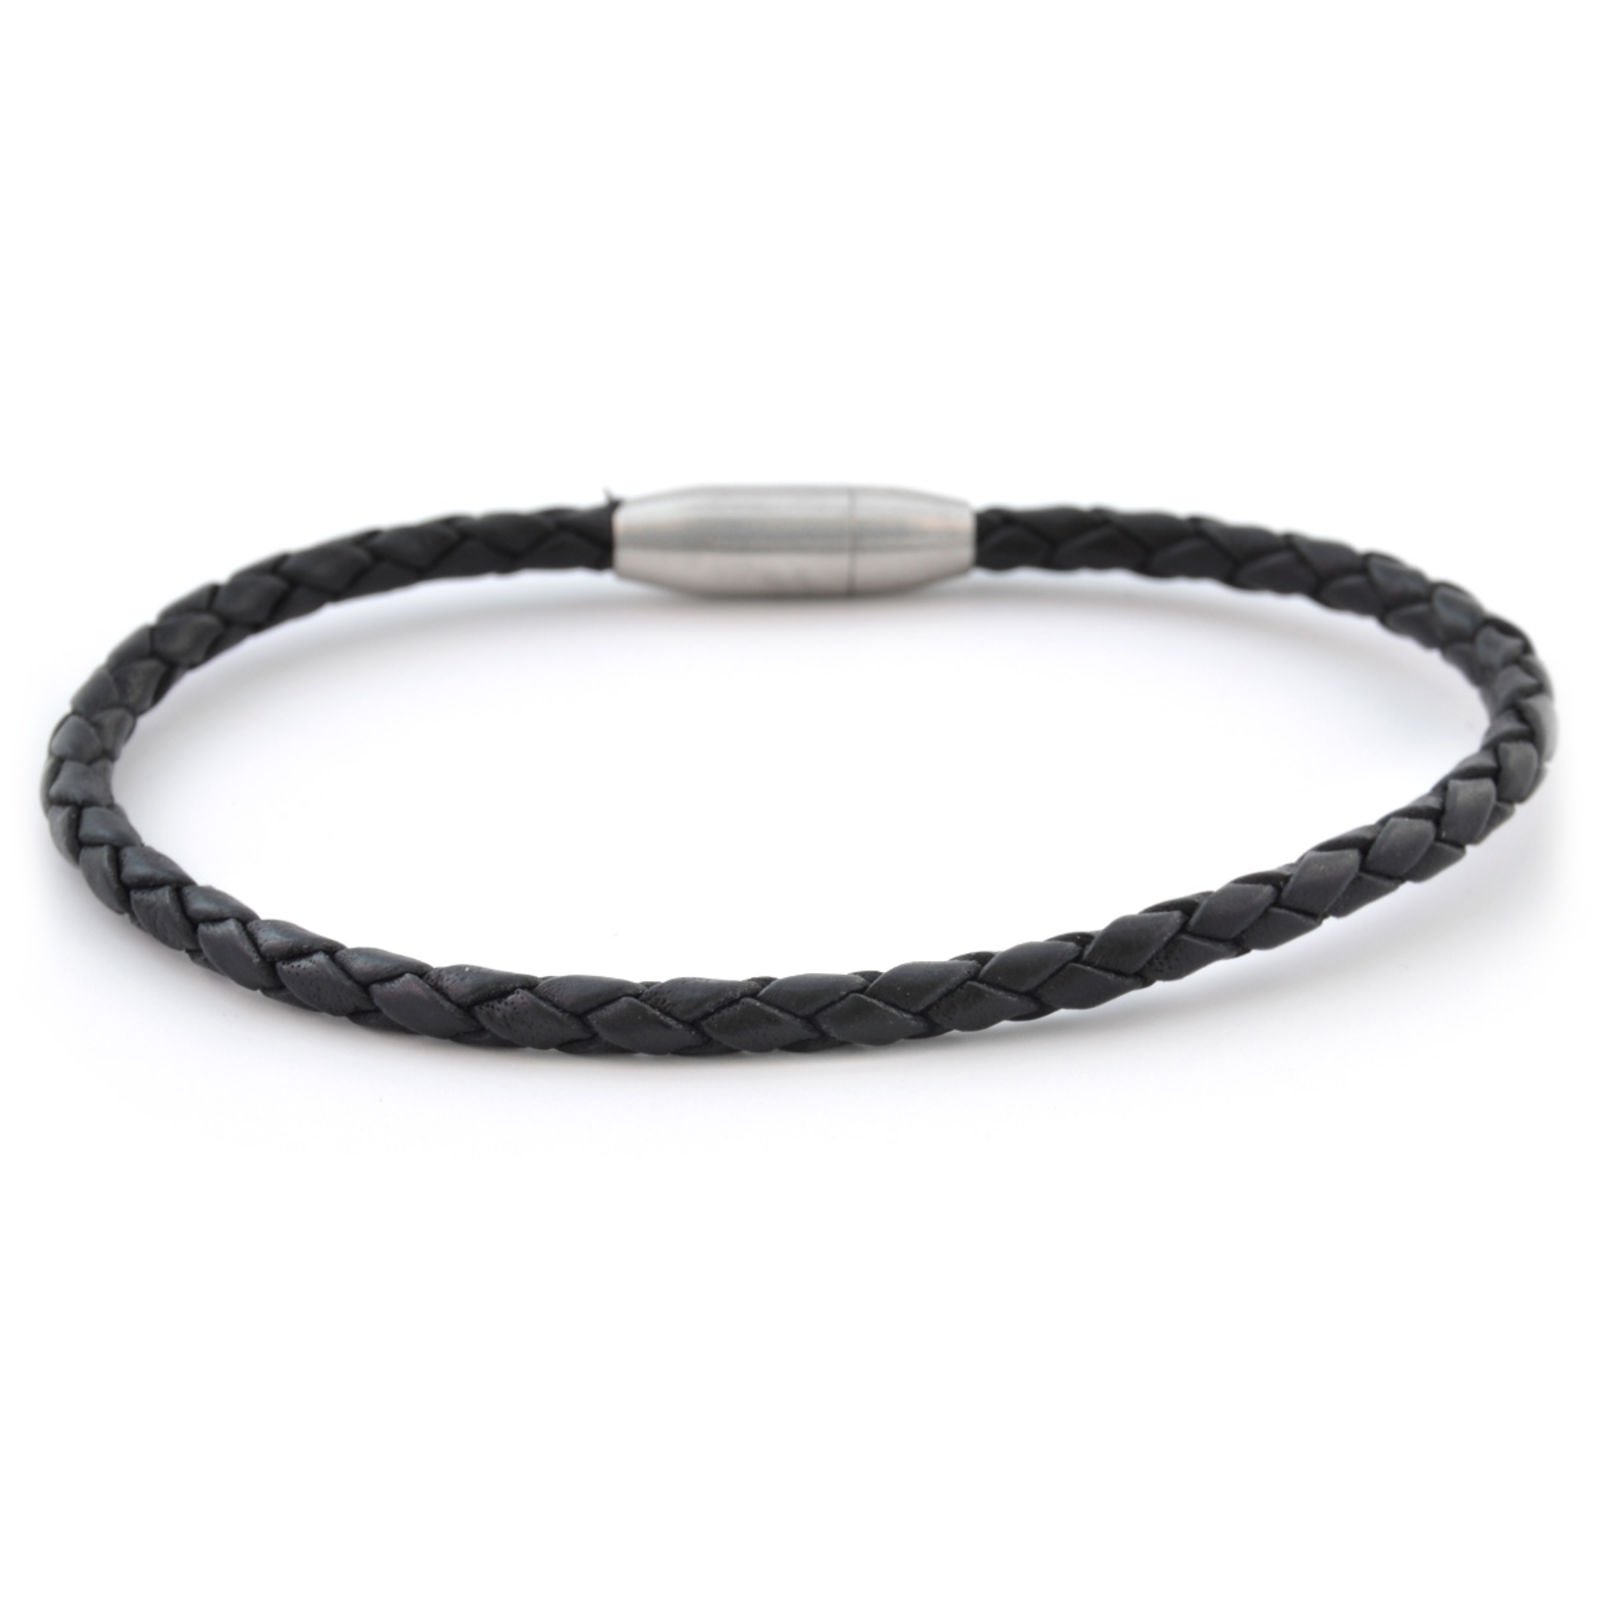 Share more than 63 thin leather bracelet best - 3tdesign.edu.vn